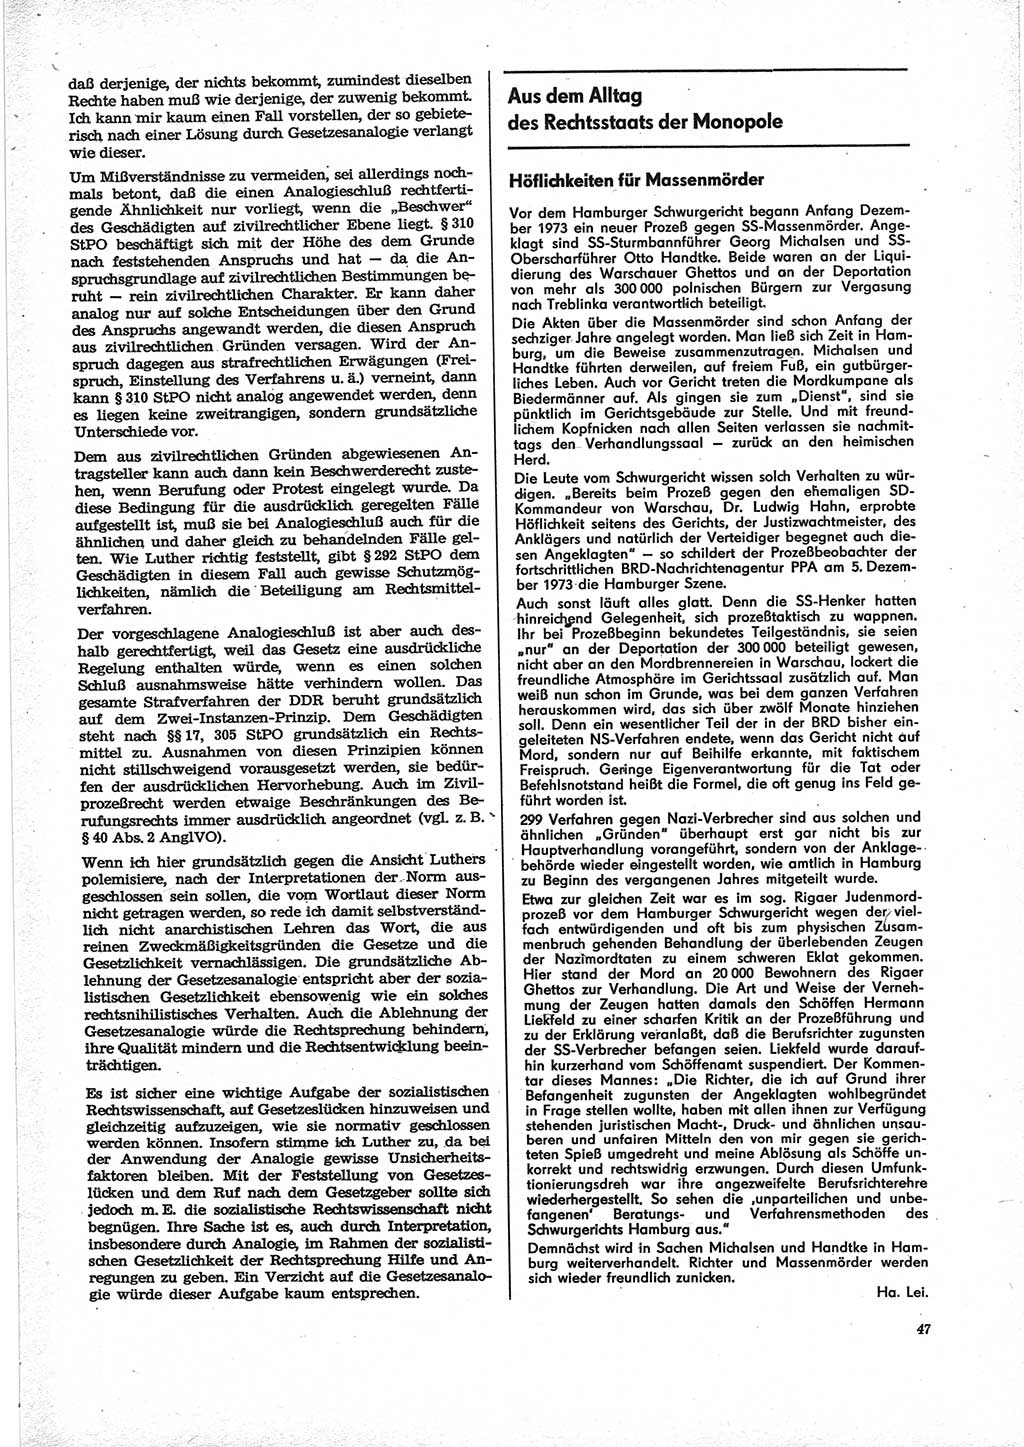 Neue Justiz (NJ), Zeitschrift für Recht und Rechtswissenschaft [Deutsche Demokratische Republik (DDR)], 28. Jahrgang 1974, Seite 47 (NJ DDR 1974, S. 47)